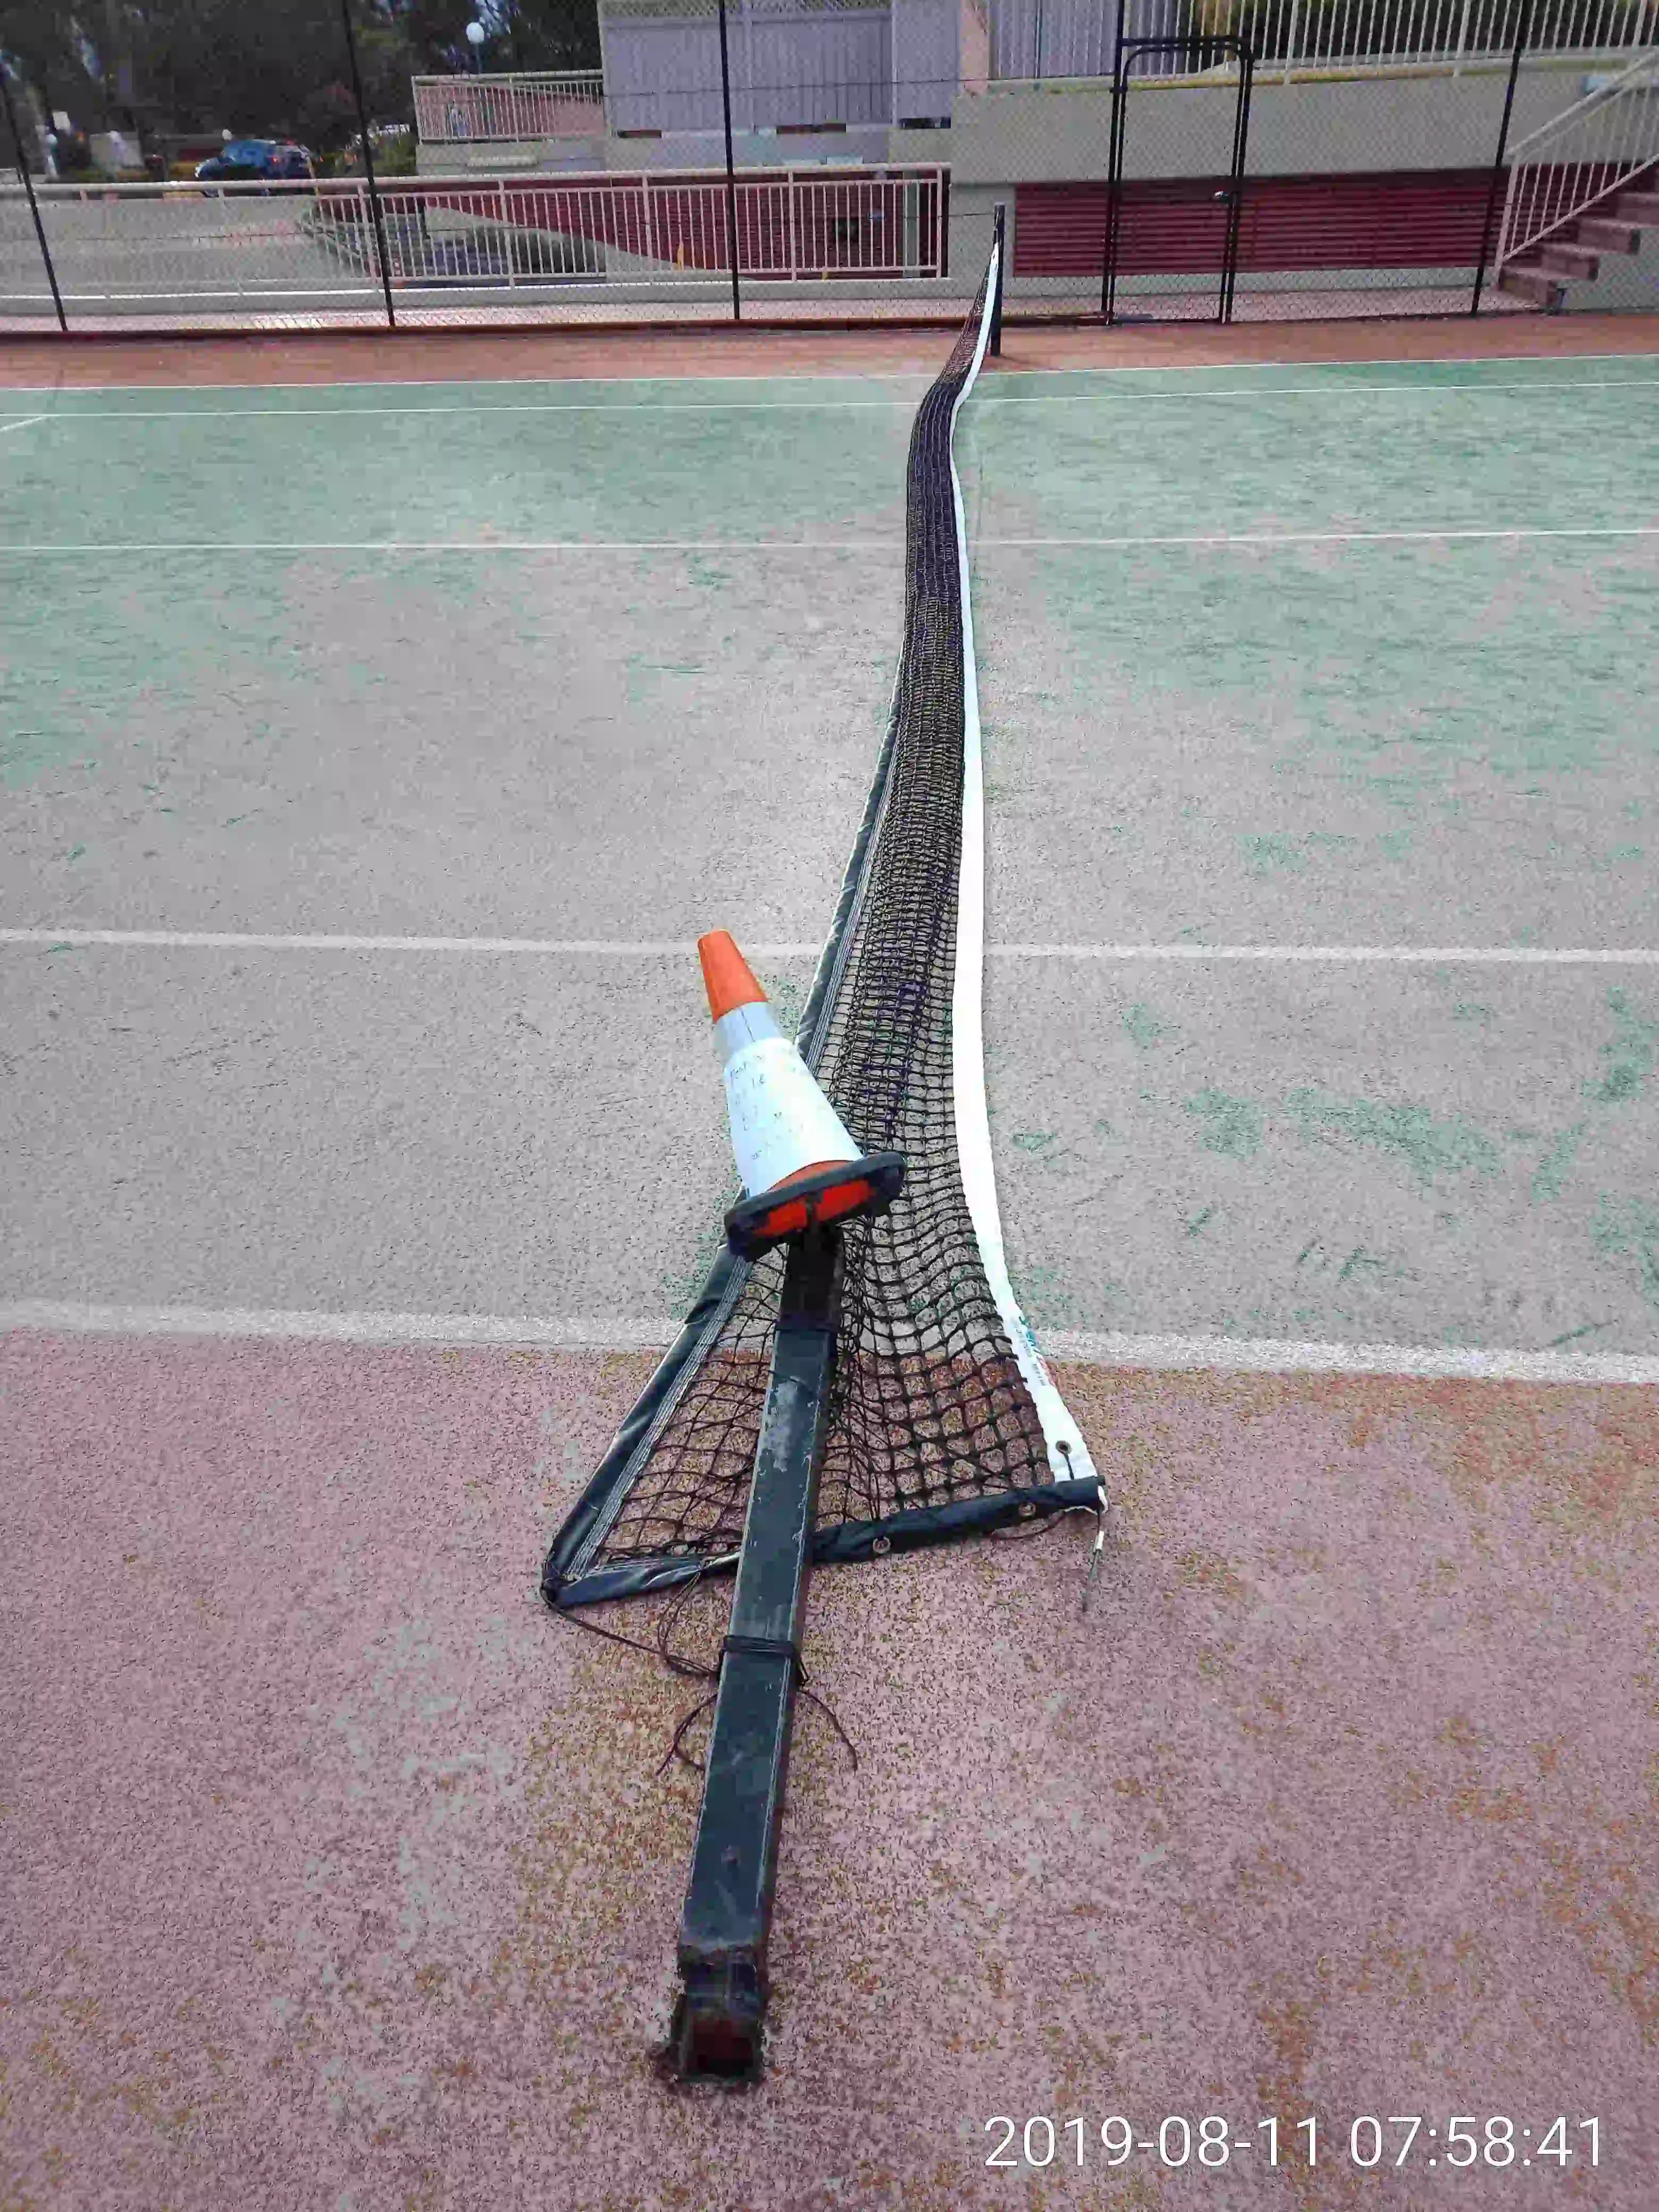 SP52948-tennis-court-2-damage-photo-6-11Aug2019.webp